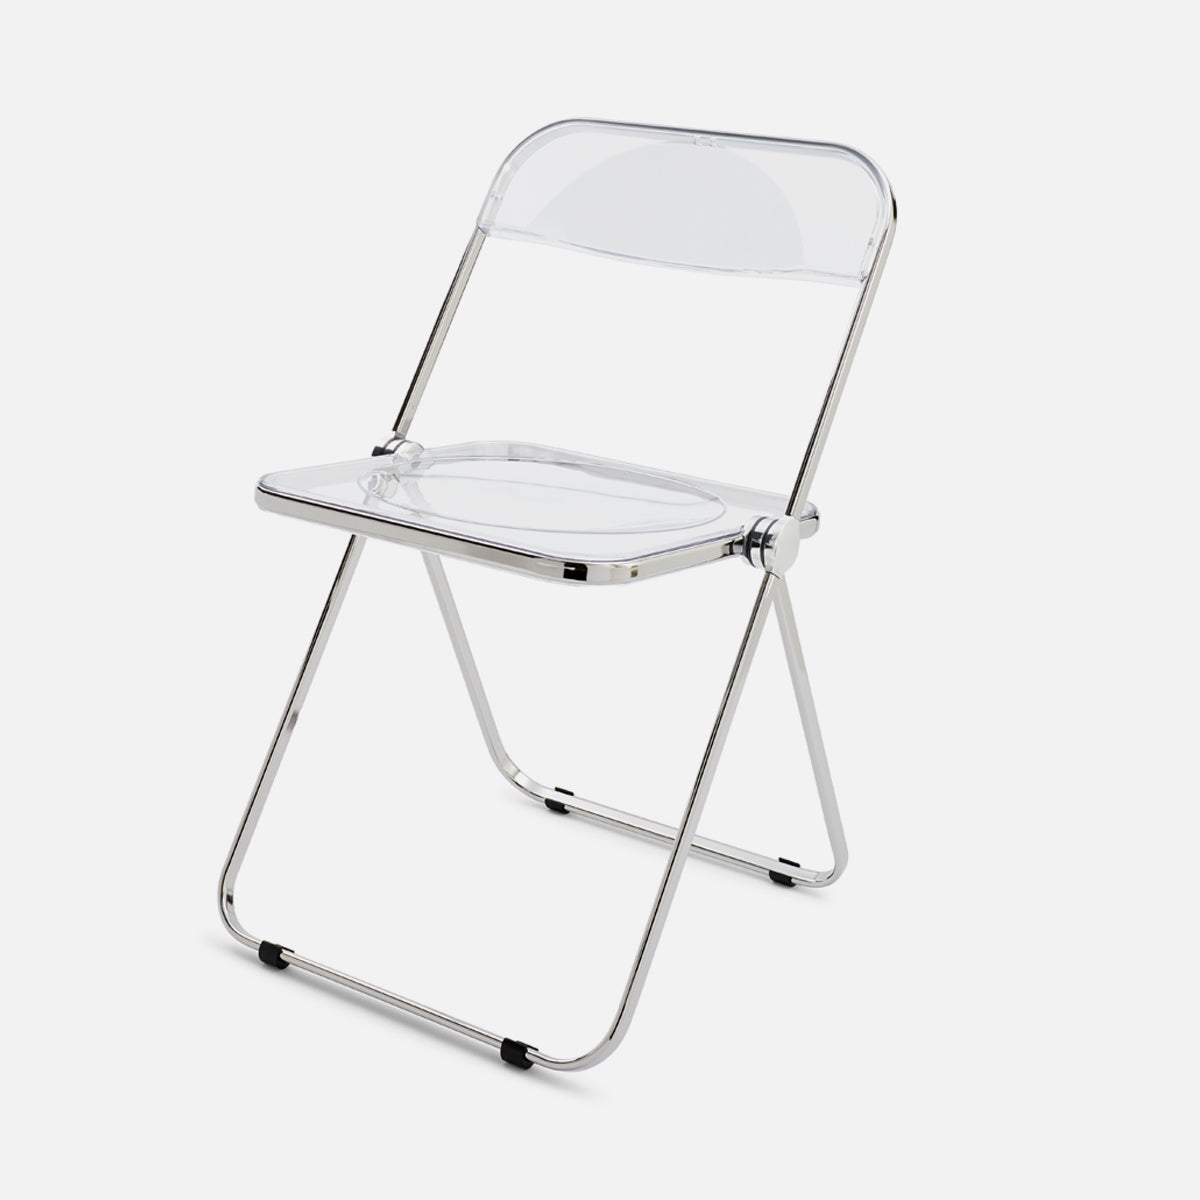 Anonima Castelli Plia Chair Chrome Clear